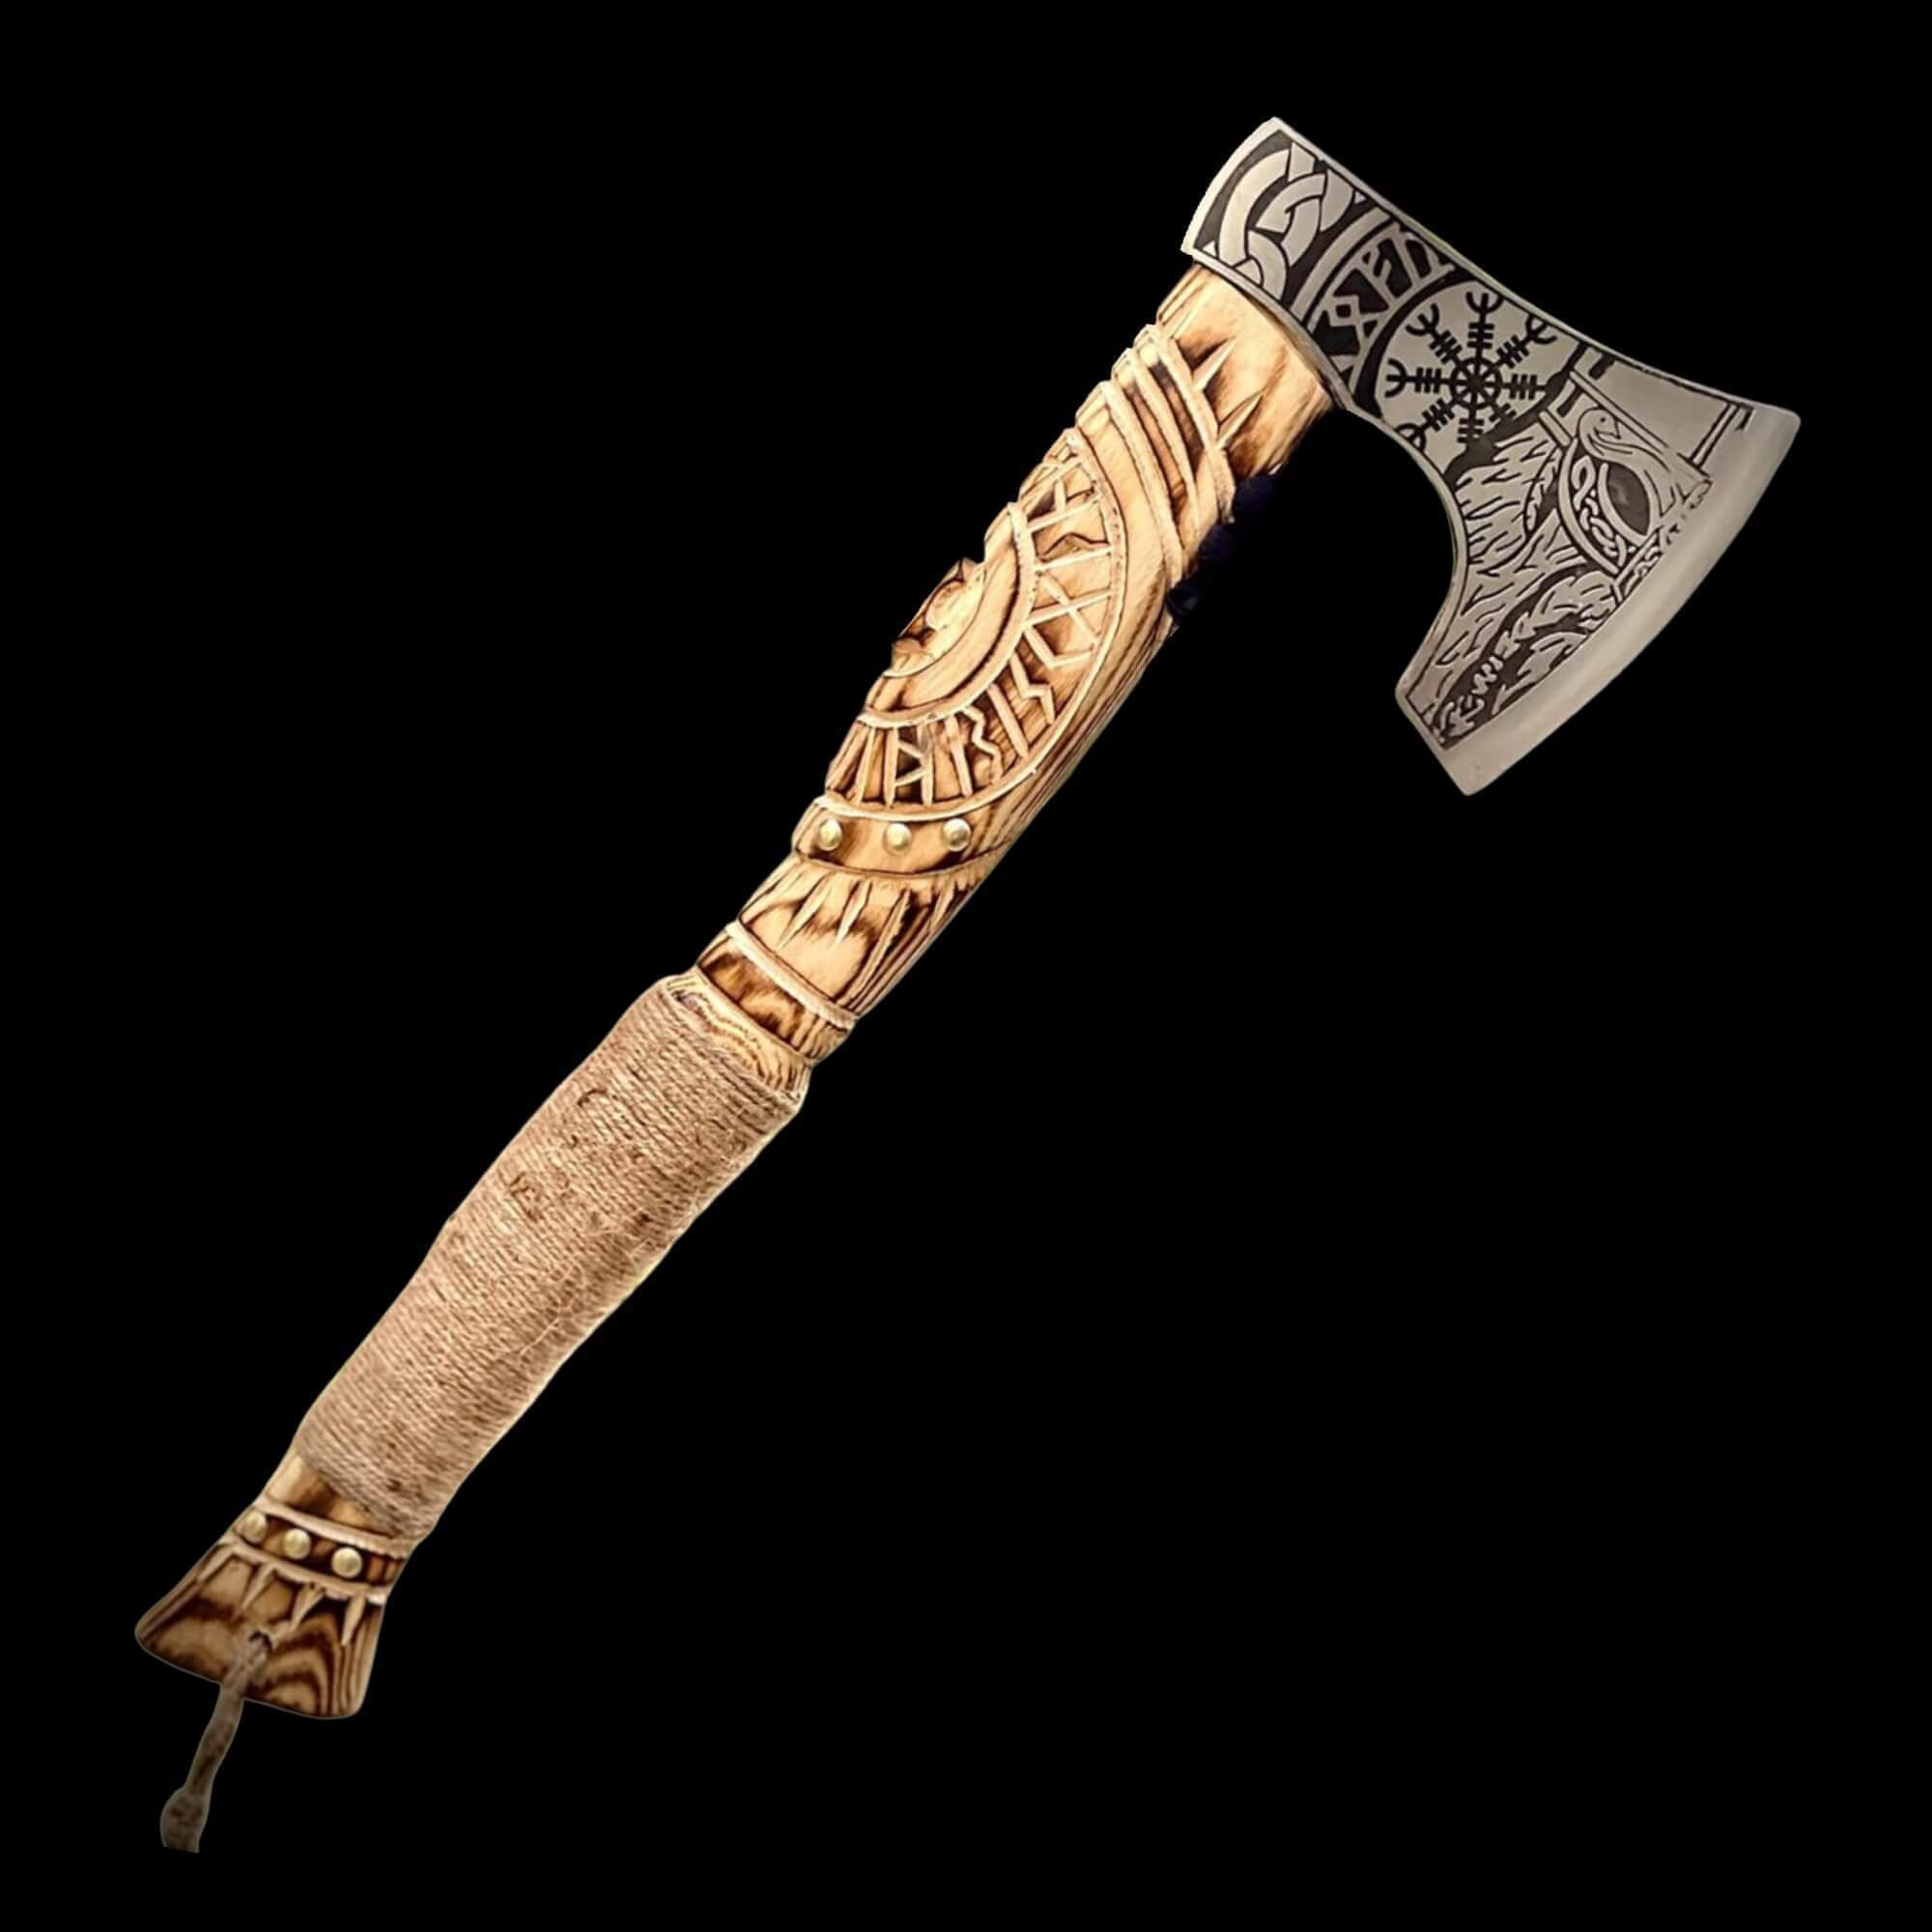 Hache de combat viking avec symboles nordiques gravés